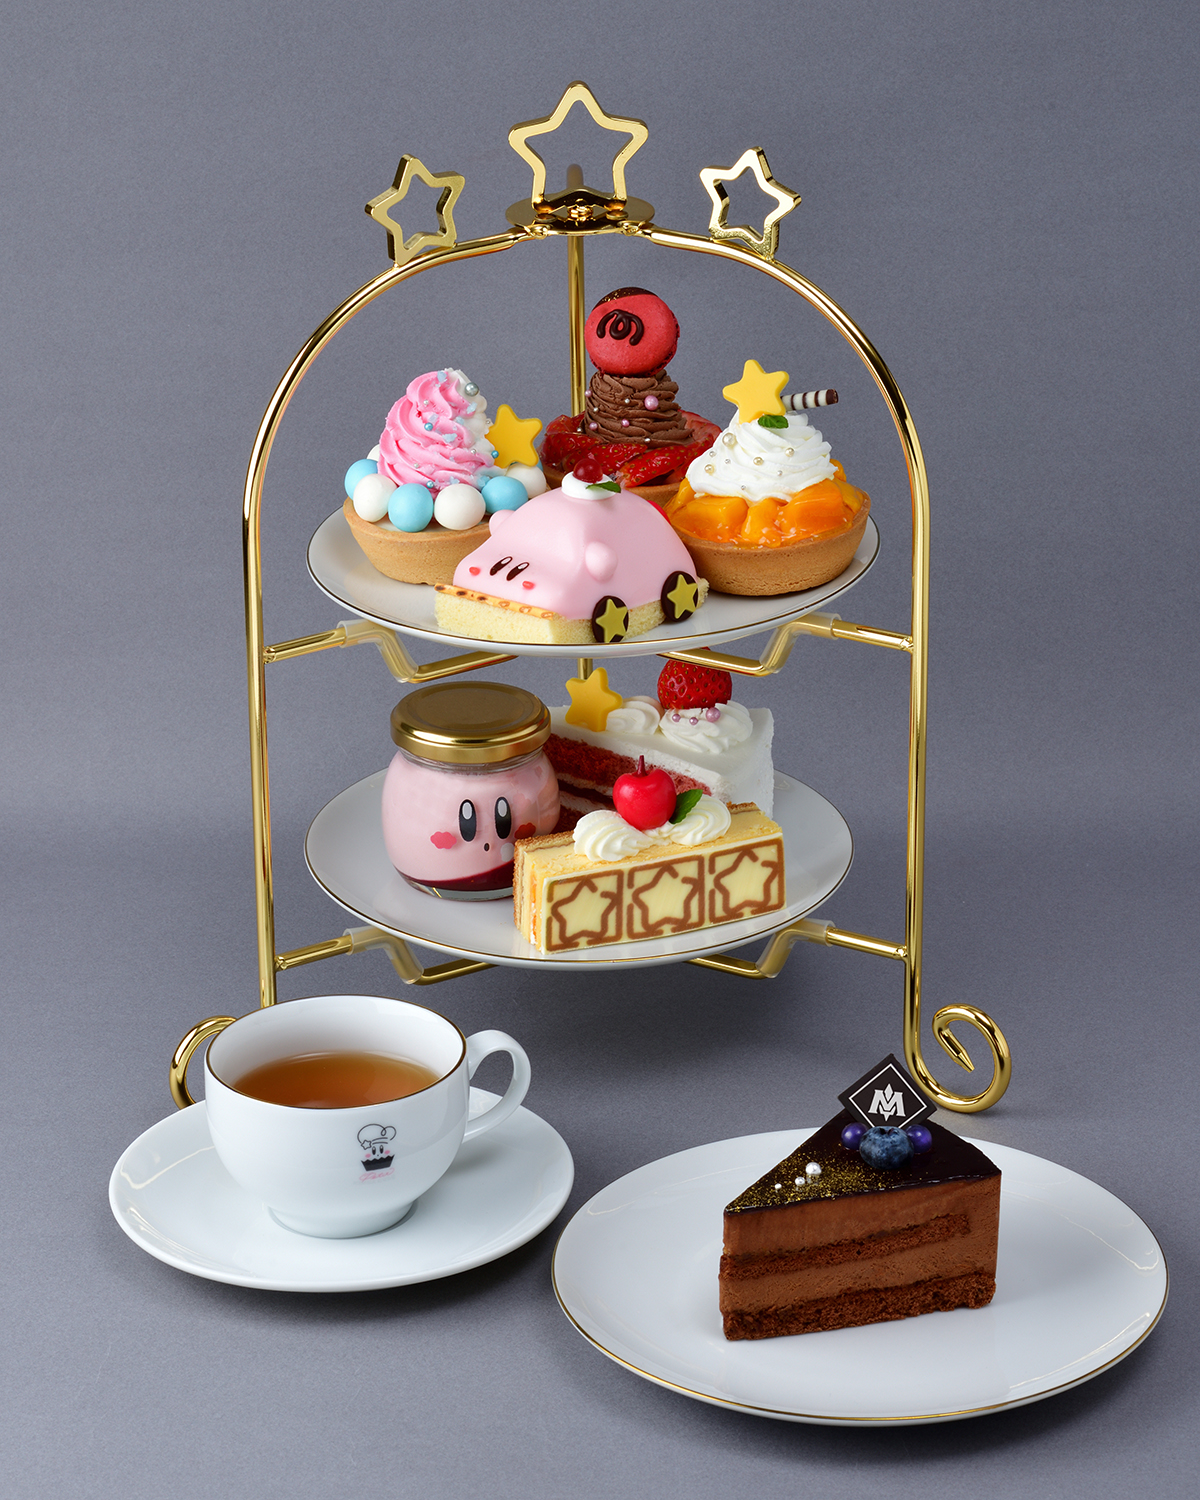 「カービィカフェ プチ」に新作「メタナイトの気高きチョコレートケーキ」が11月29日より発売決定_005